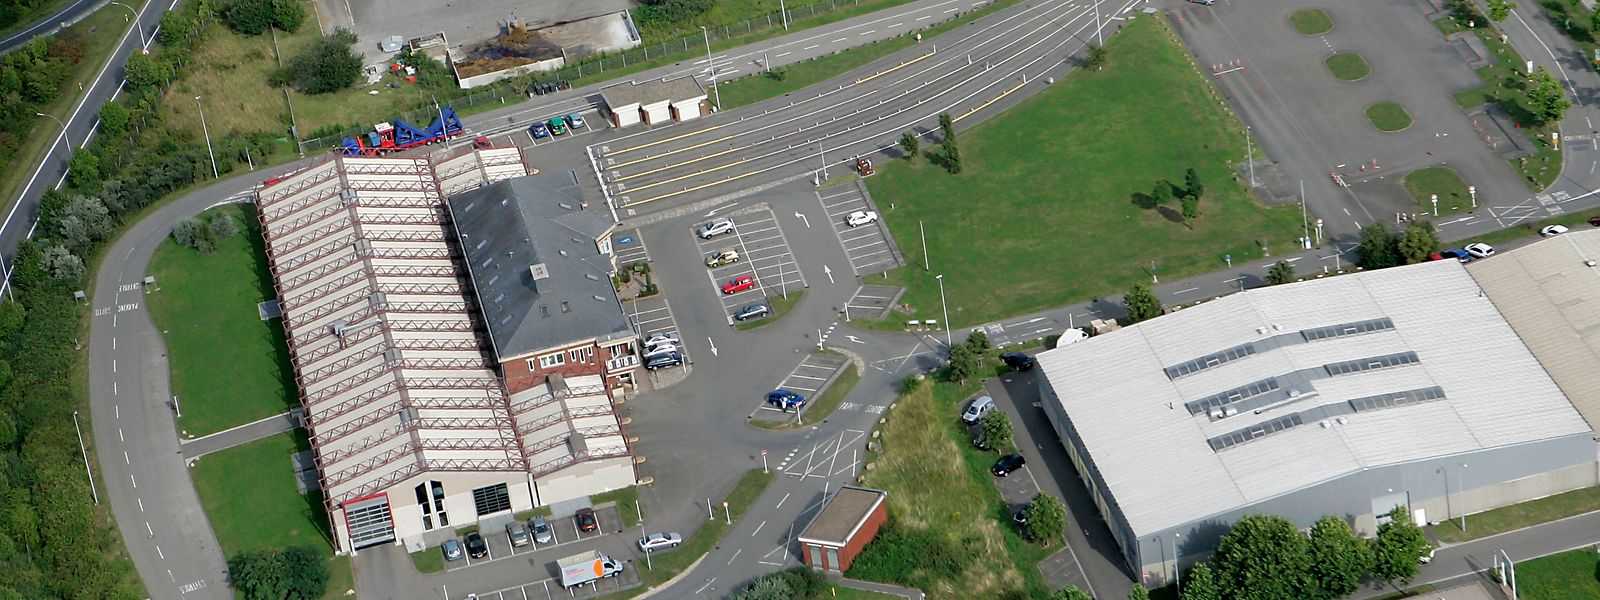 C'est juste derrière la station de contrôle technique à Esch-sur-Alzette qu'est prévu le troisième terrain d'entraînement et d'examen pour motocyclistes.